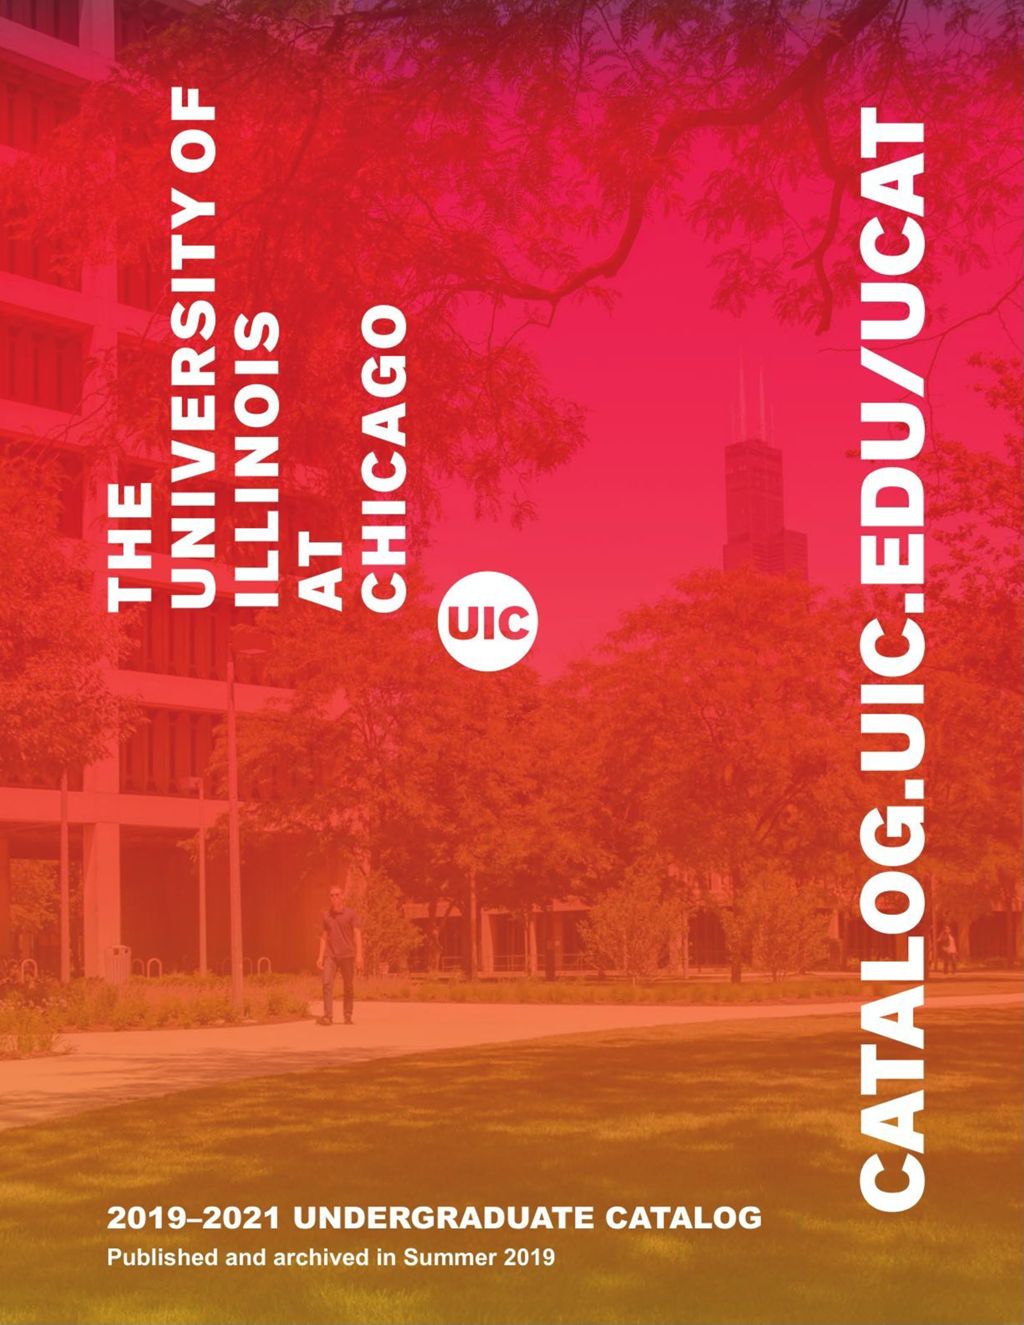 Undergraduate Catalog, 2019-2021